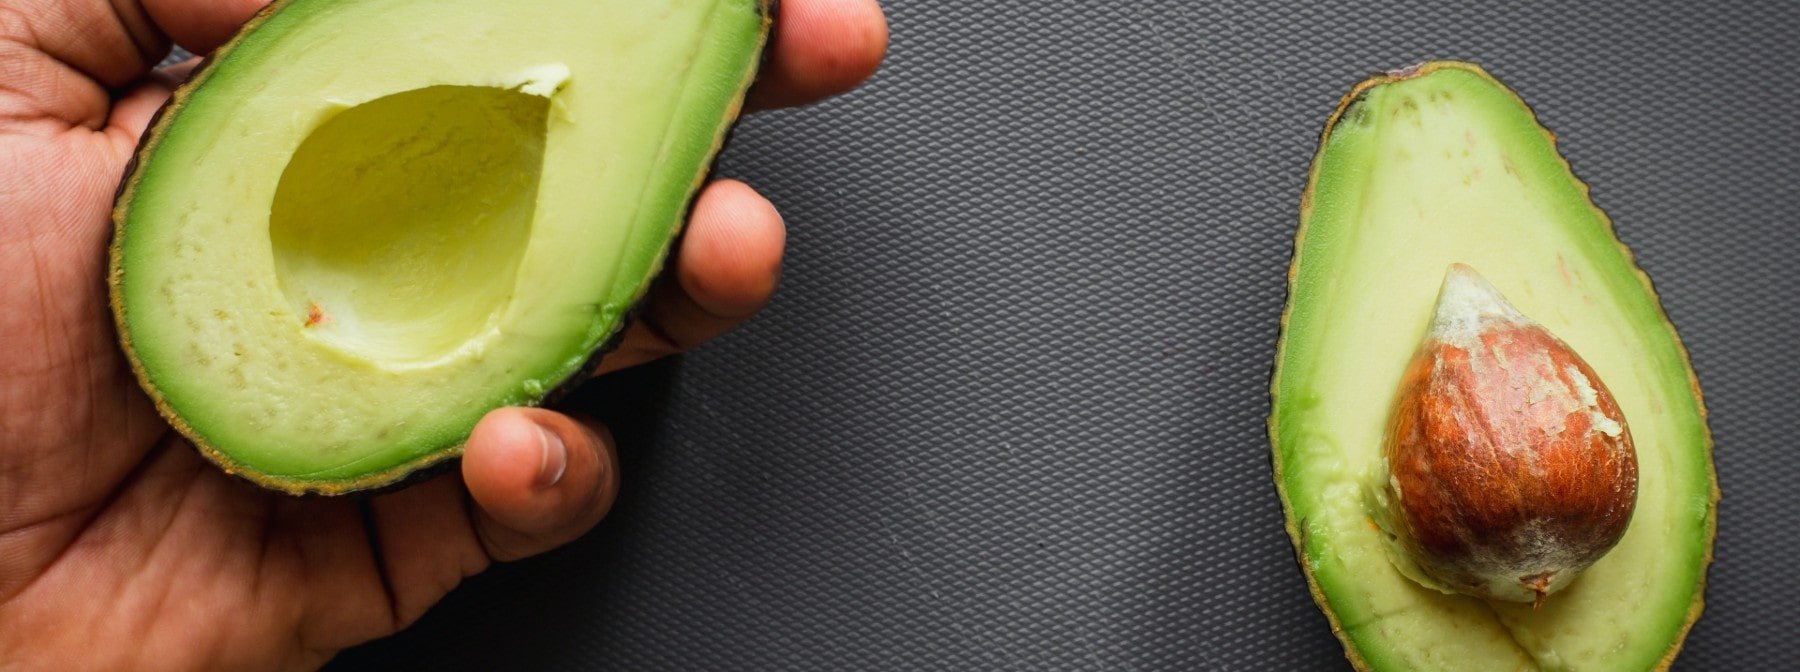 5 benefici dell’avocado per la salute